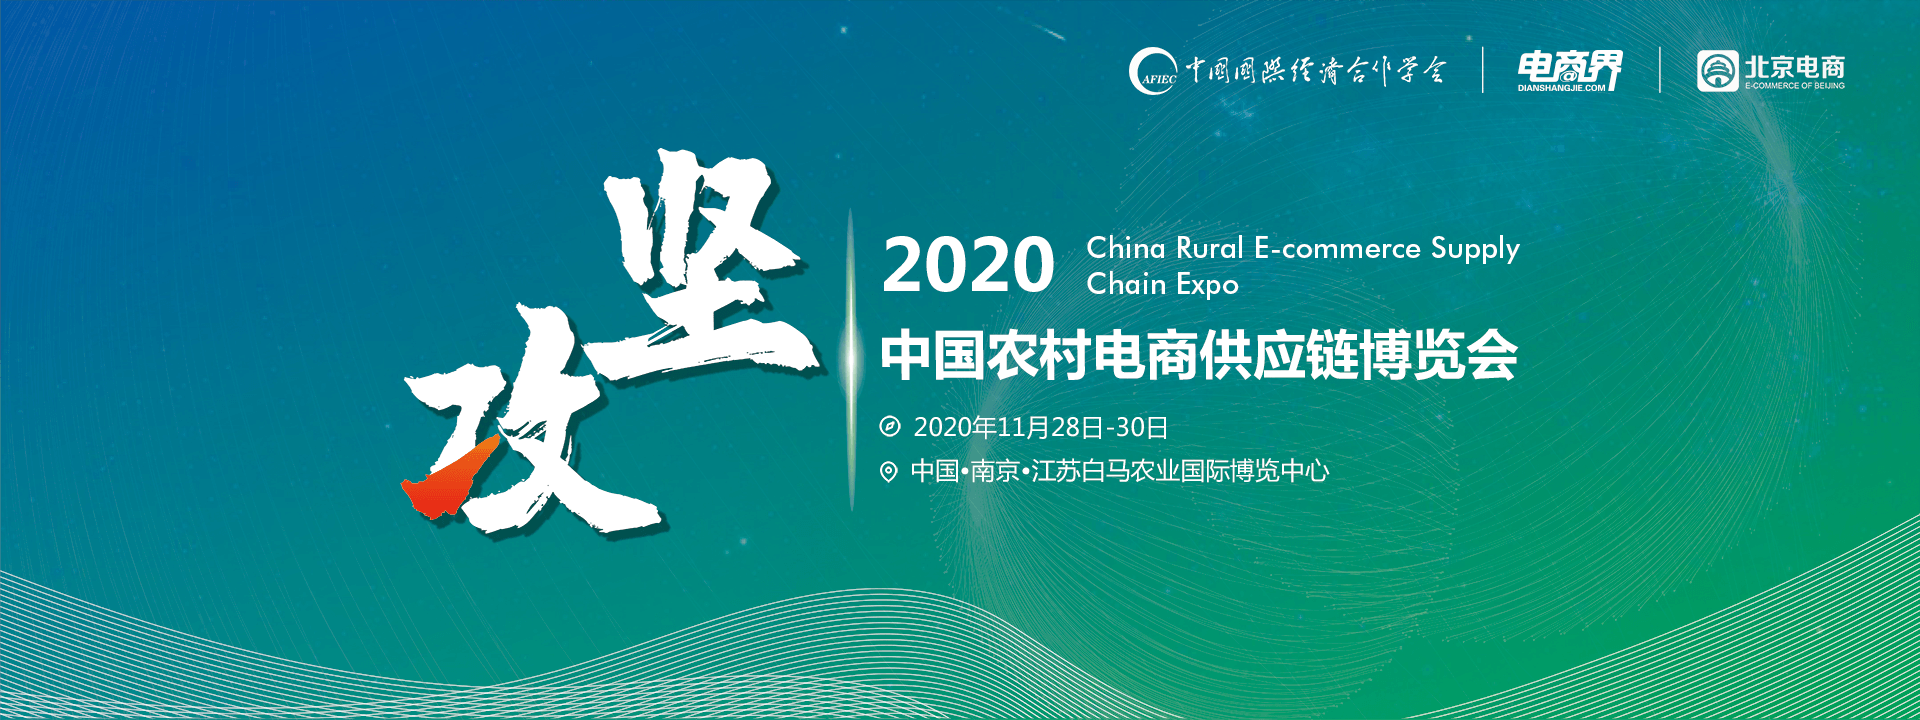 2020中国农村电商供应链大会